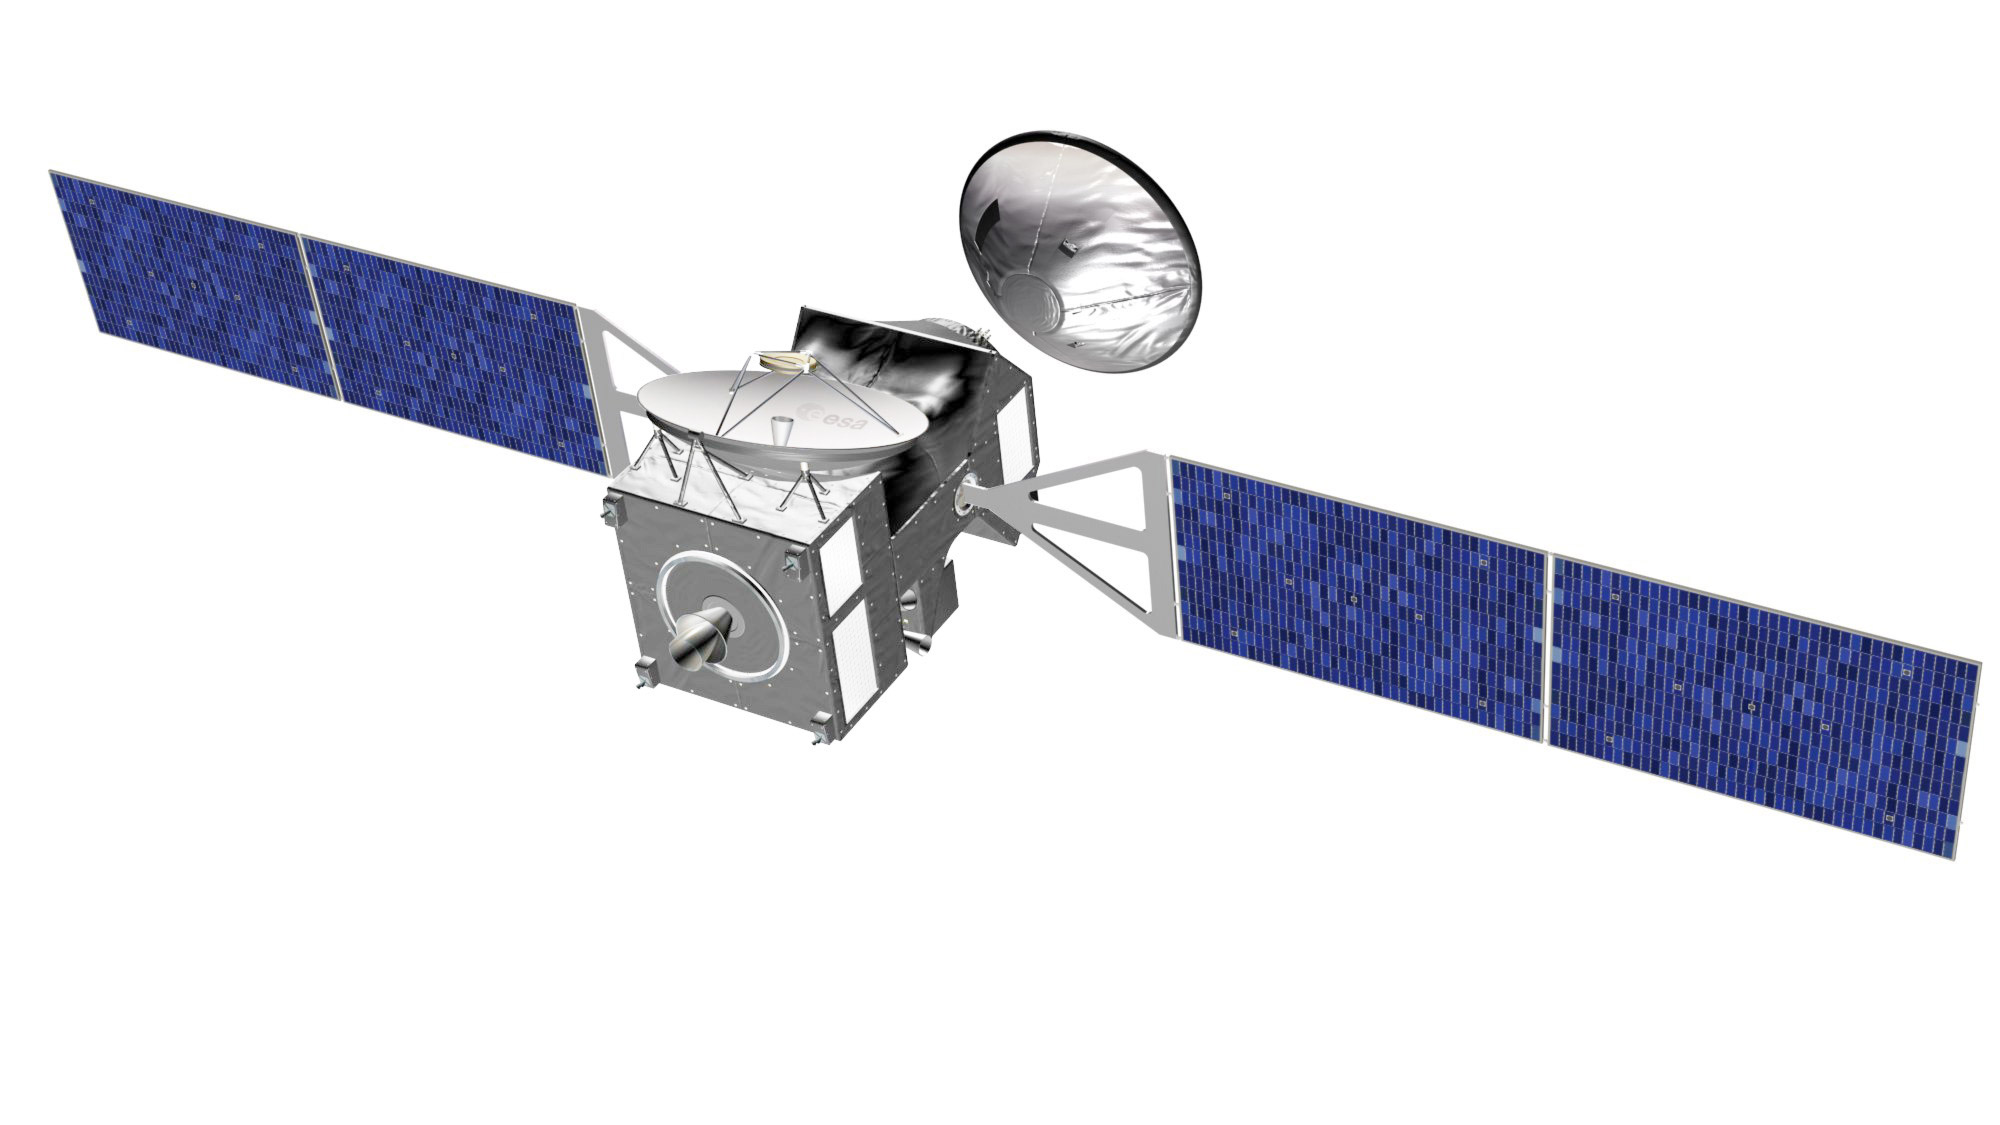 Lancés en 2016 par une fusée Atlas-5, l'orbiteur Trace Gas Orbiter d'ExoMars et l'atterrisseur EDM qu'il transportera mettront neuf mois à rejoindre Mars. © Esa